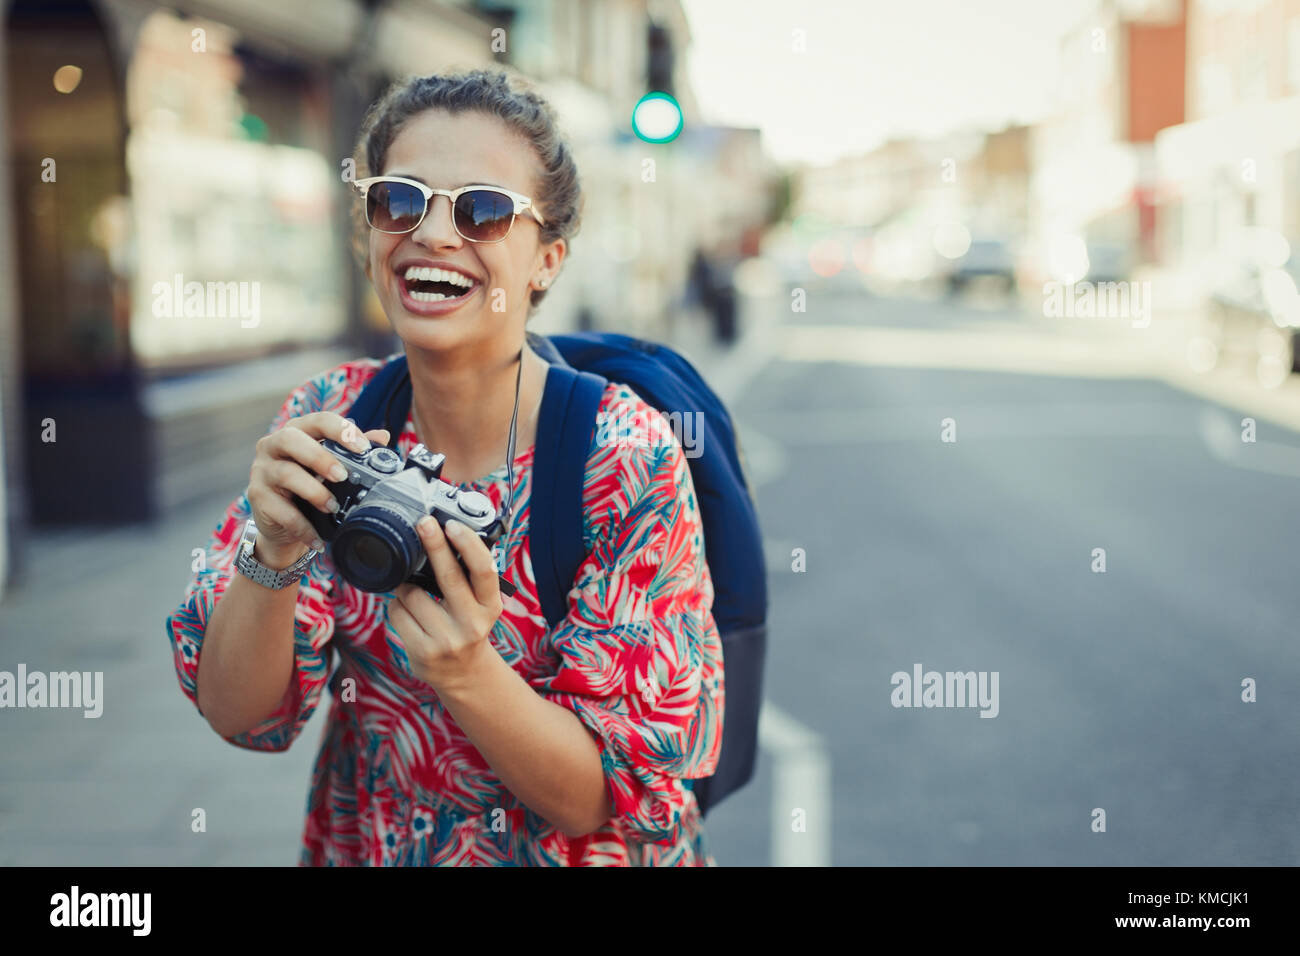 Portrait lachende, begeisterte junge Touristin in Sonnenbrillen, die mit Kamera auf der städtischen Straße fotografiert Stockfoto